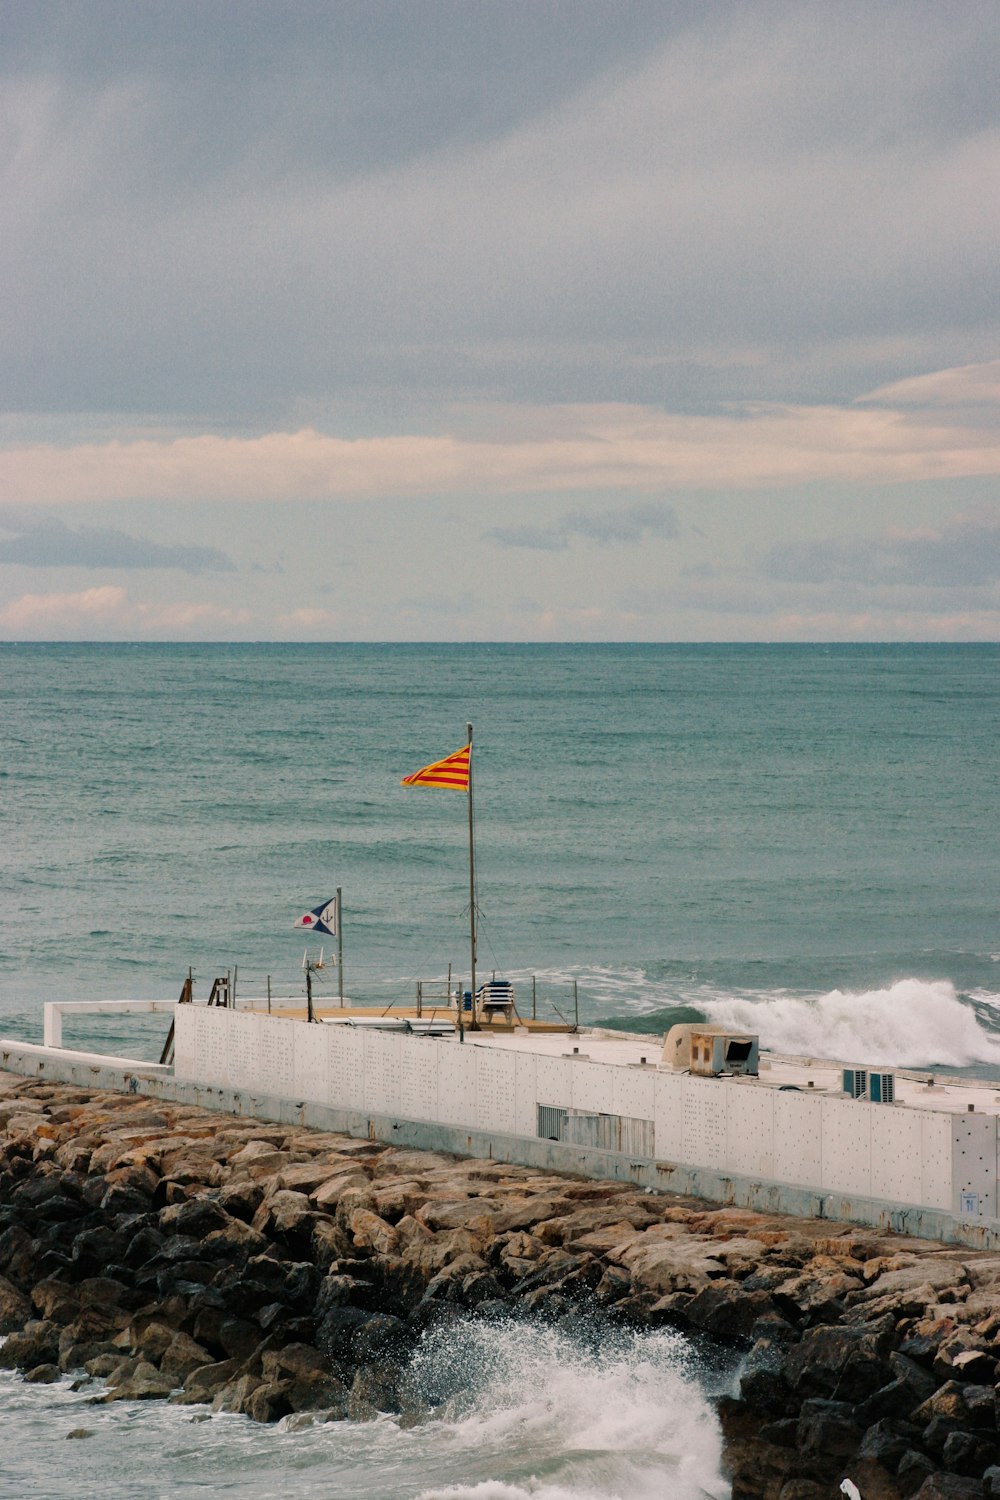 a flag is flying on a pier near the ocean